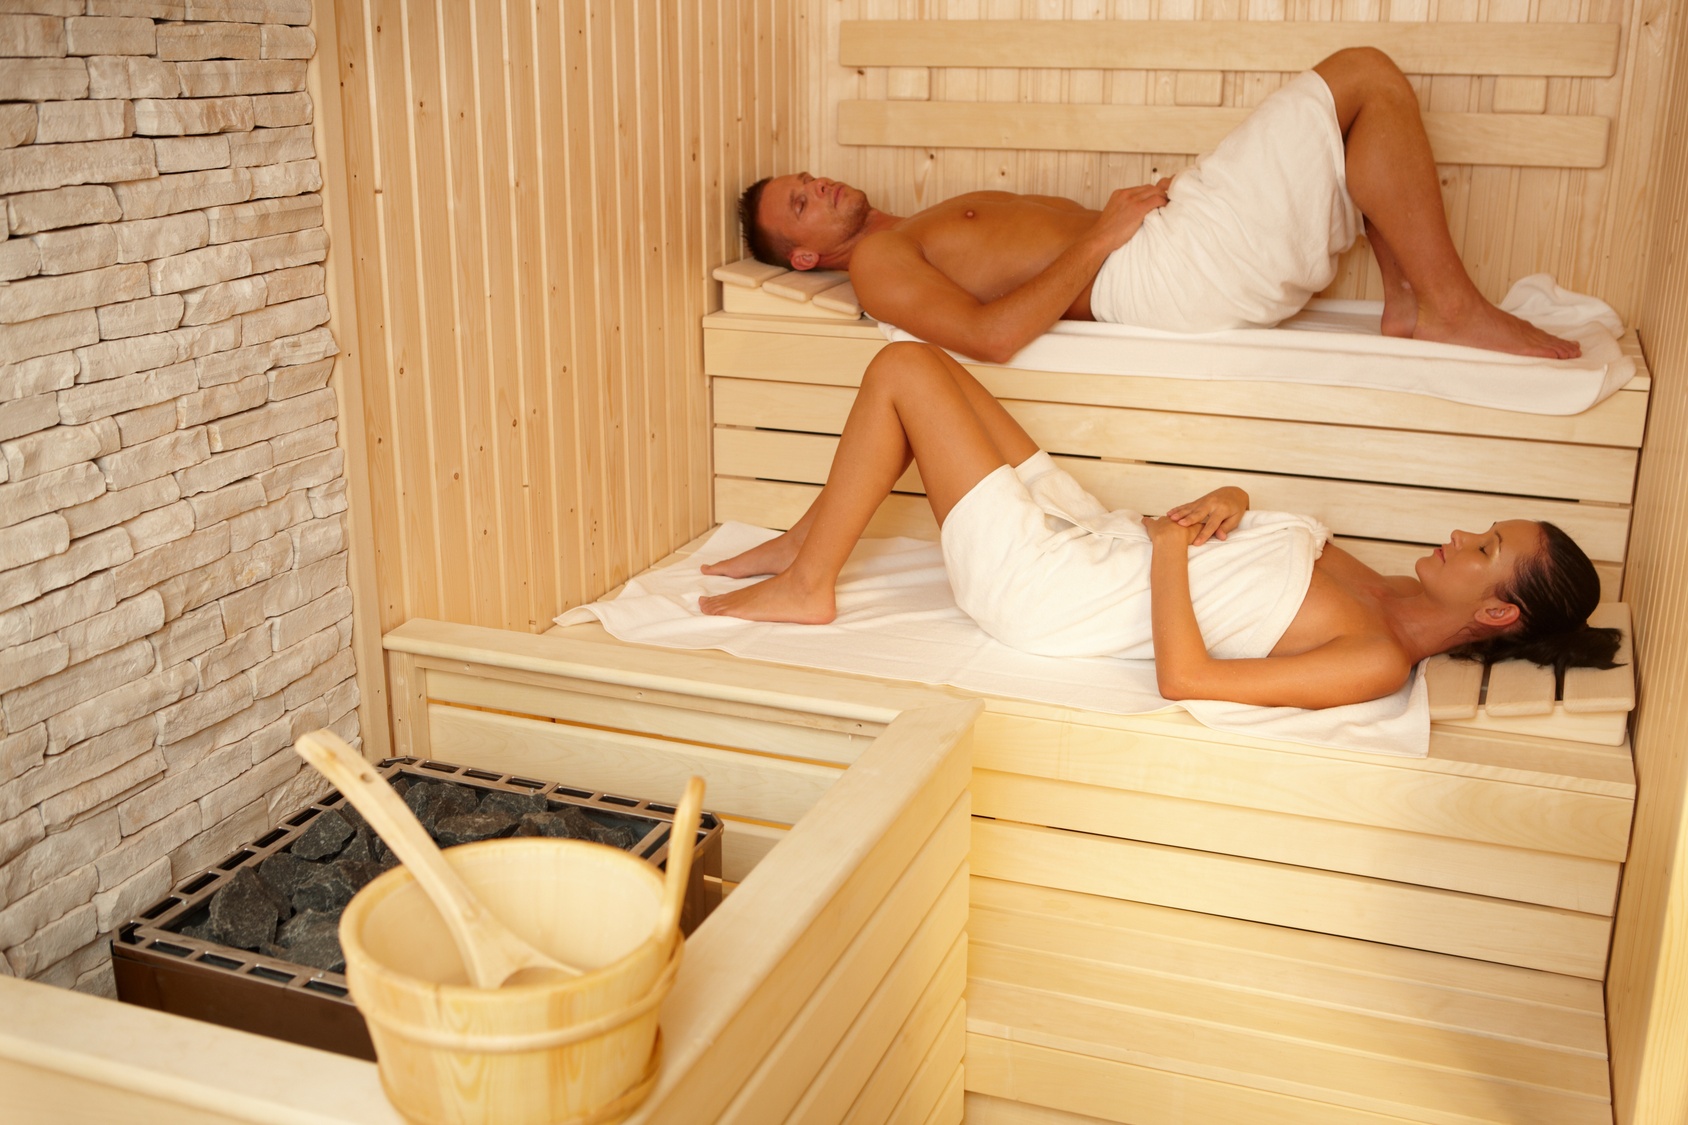 Full service sauna